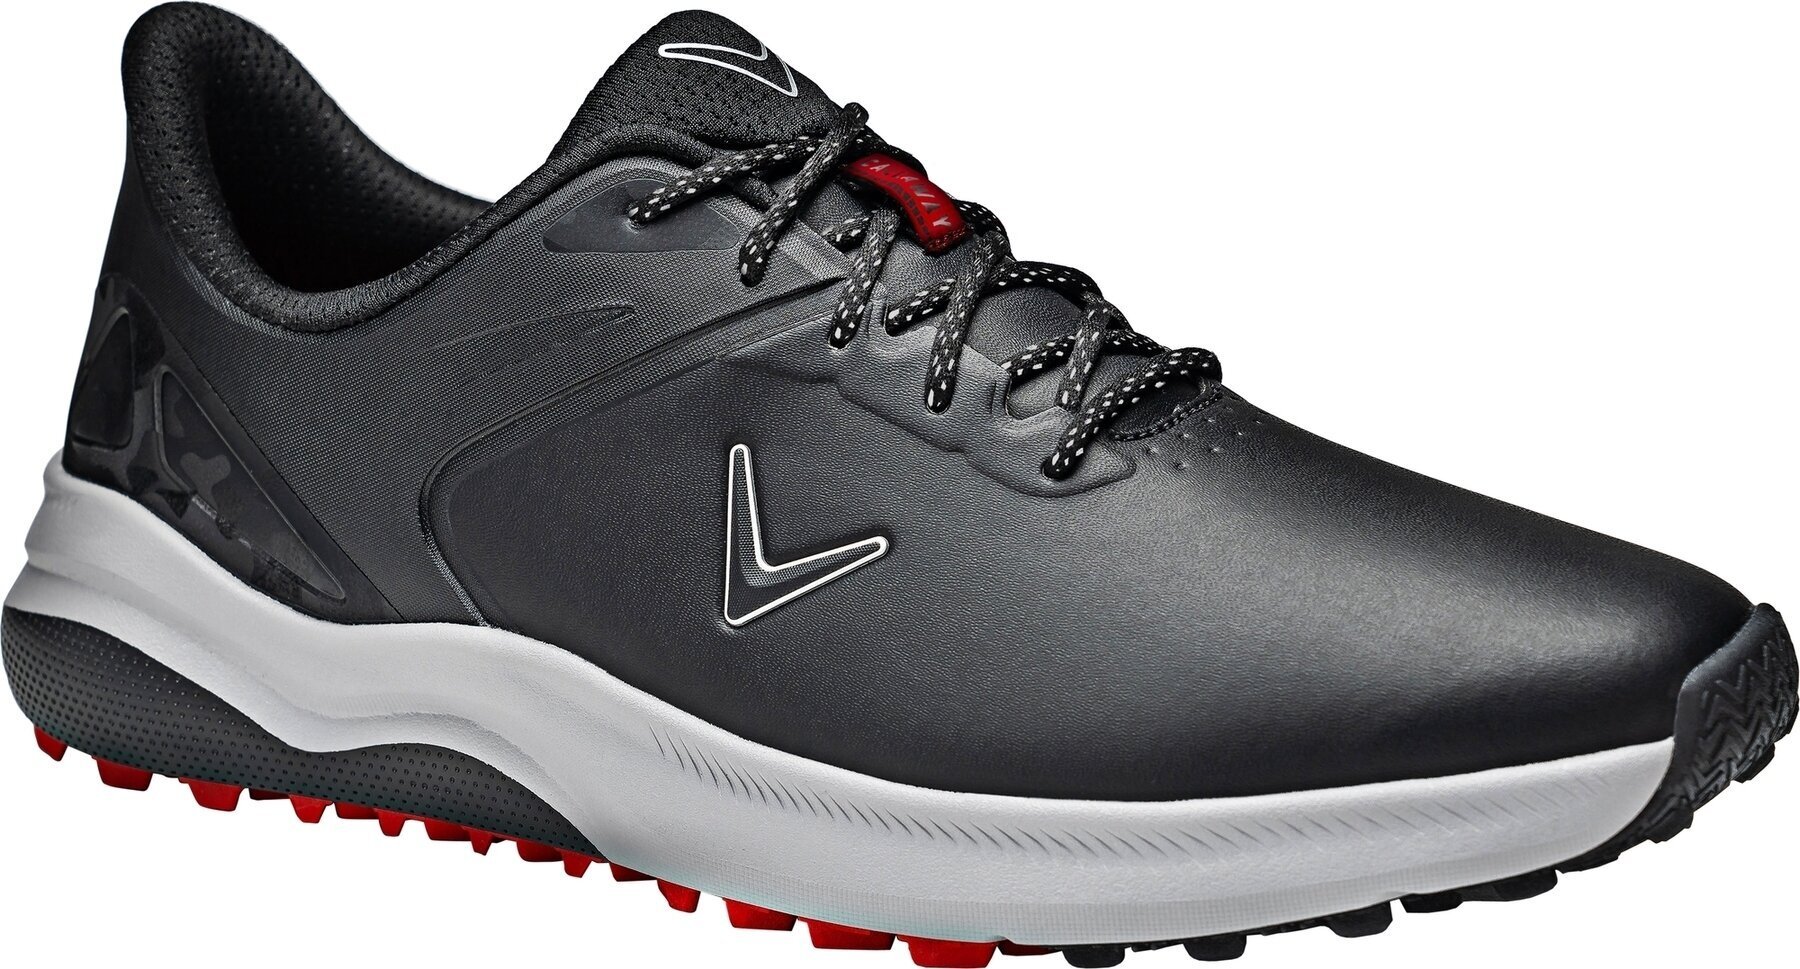 Heren golfschoenen Callaway Lazer Mens Golf Shoes Zwart 46